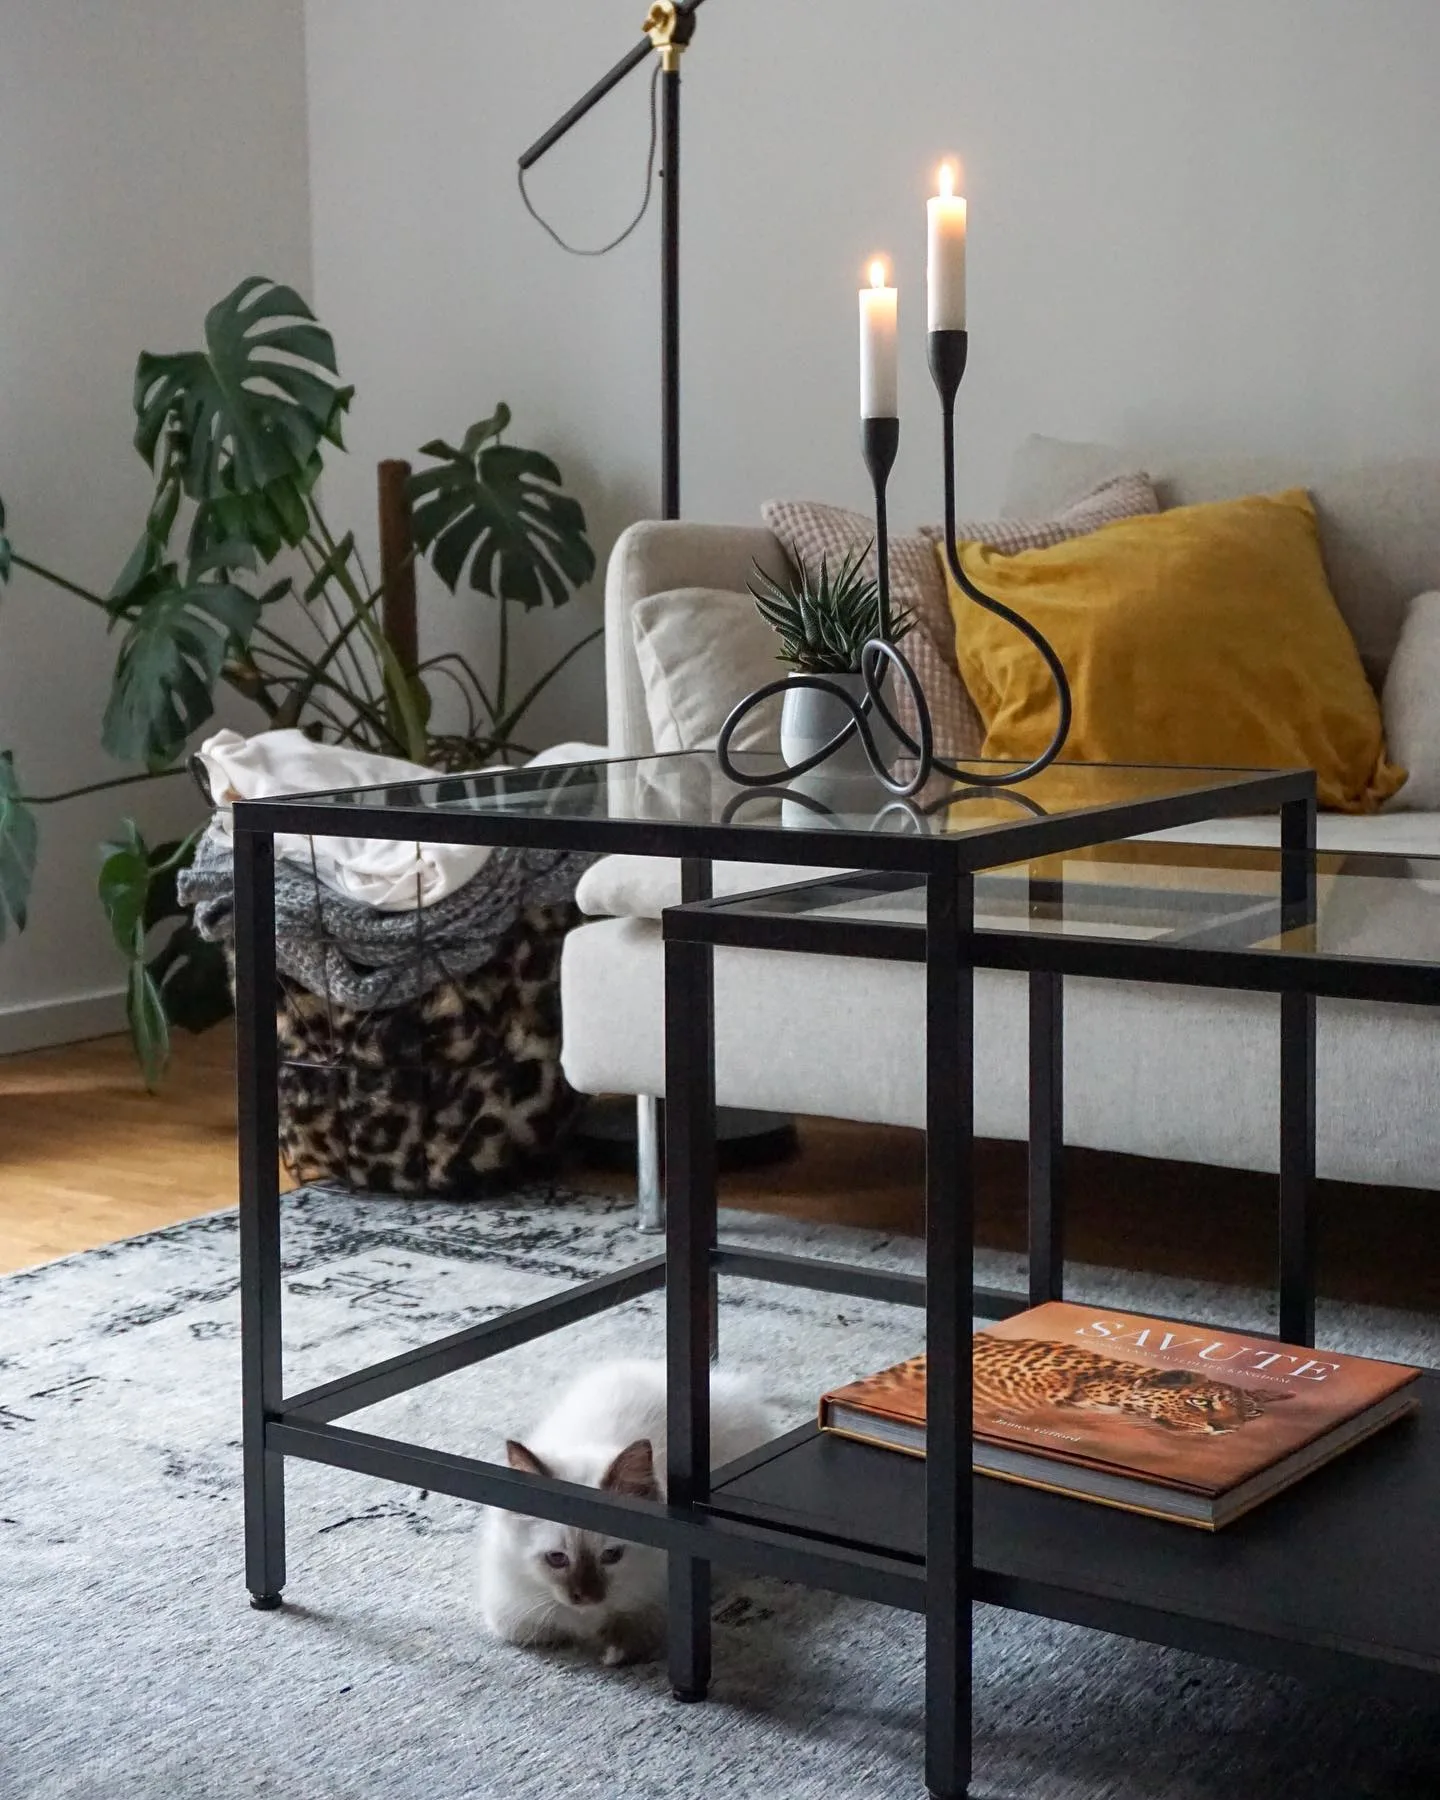 Nahaufnahme von einem Industrial Couch-Tisch aus schwarzen Metallstangen und Glas, auf dem ein schwarzer Kerzenständer mit weißer Kerze steht